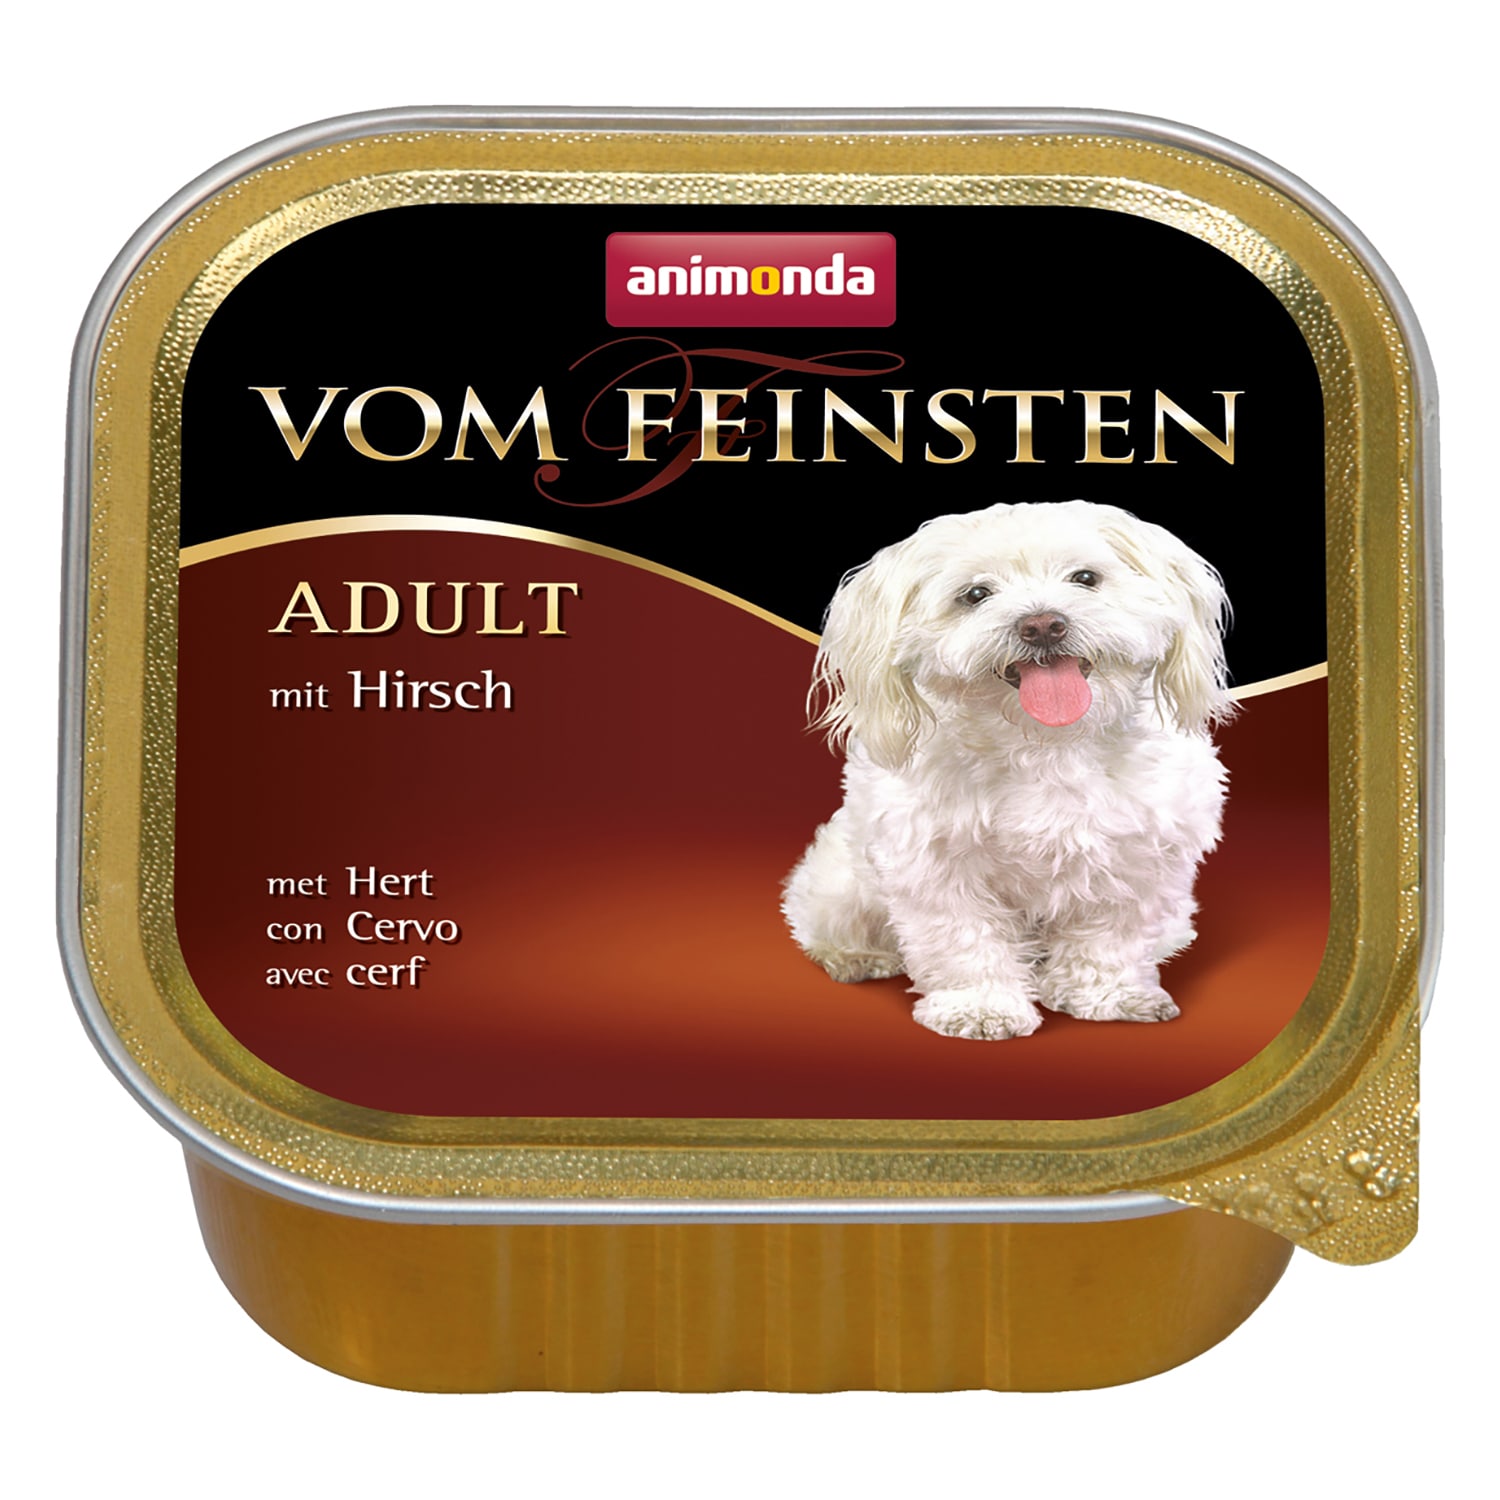 Vom Feinsten Adult консервы для собак старше 1 года, с олениной, Animonda